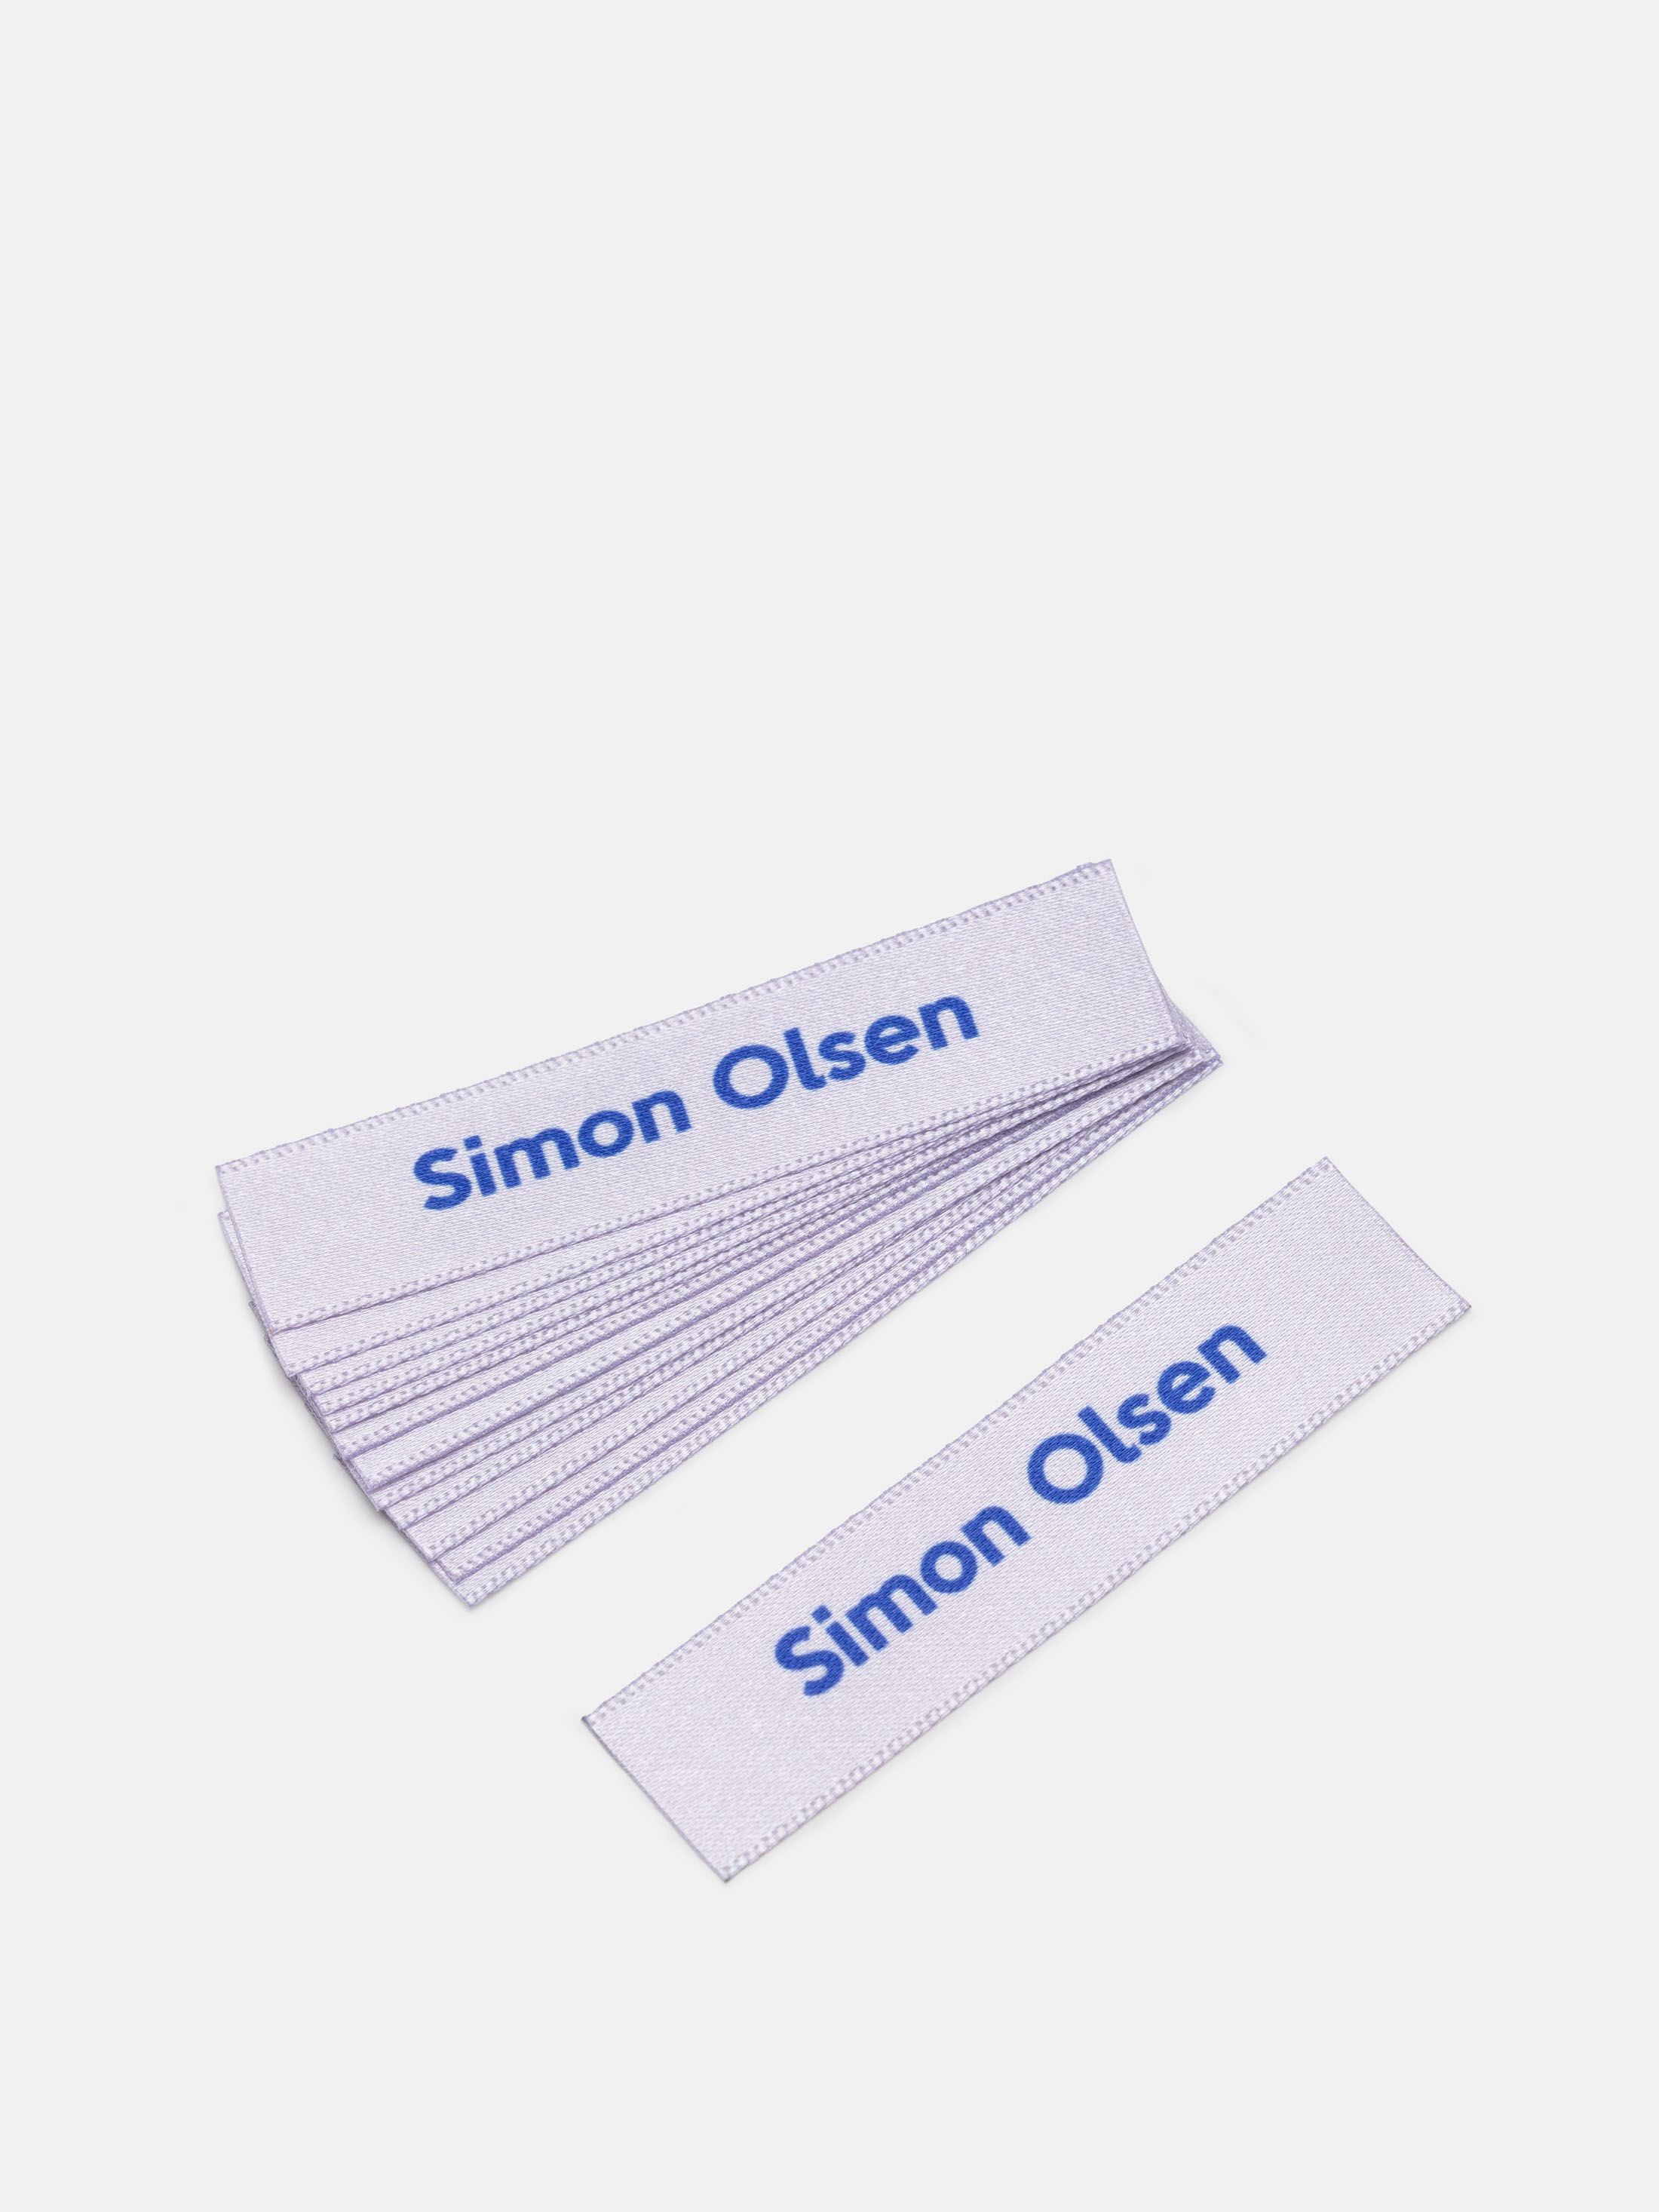 personalised school uniform labels
packs